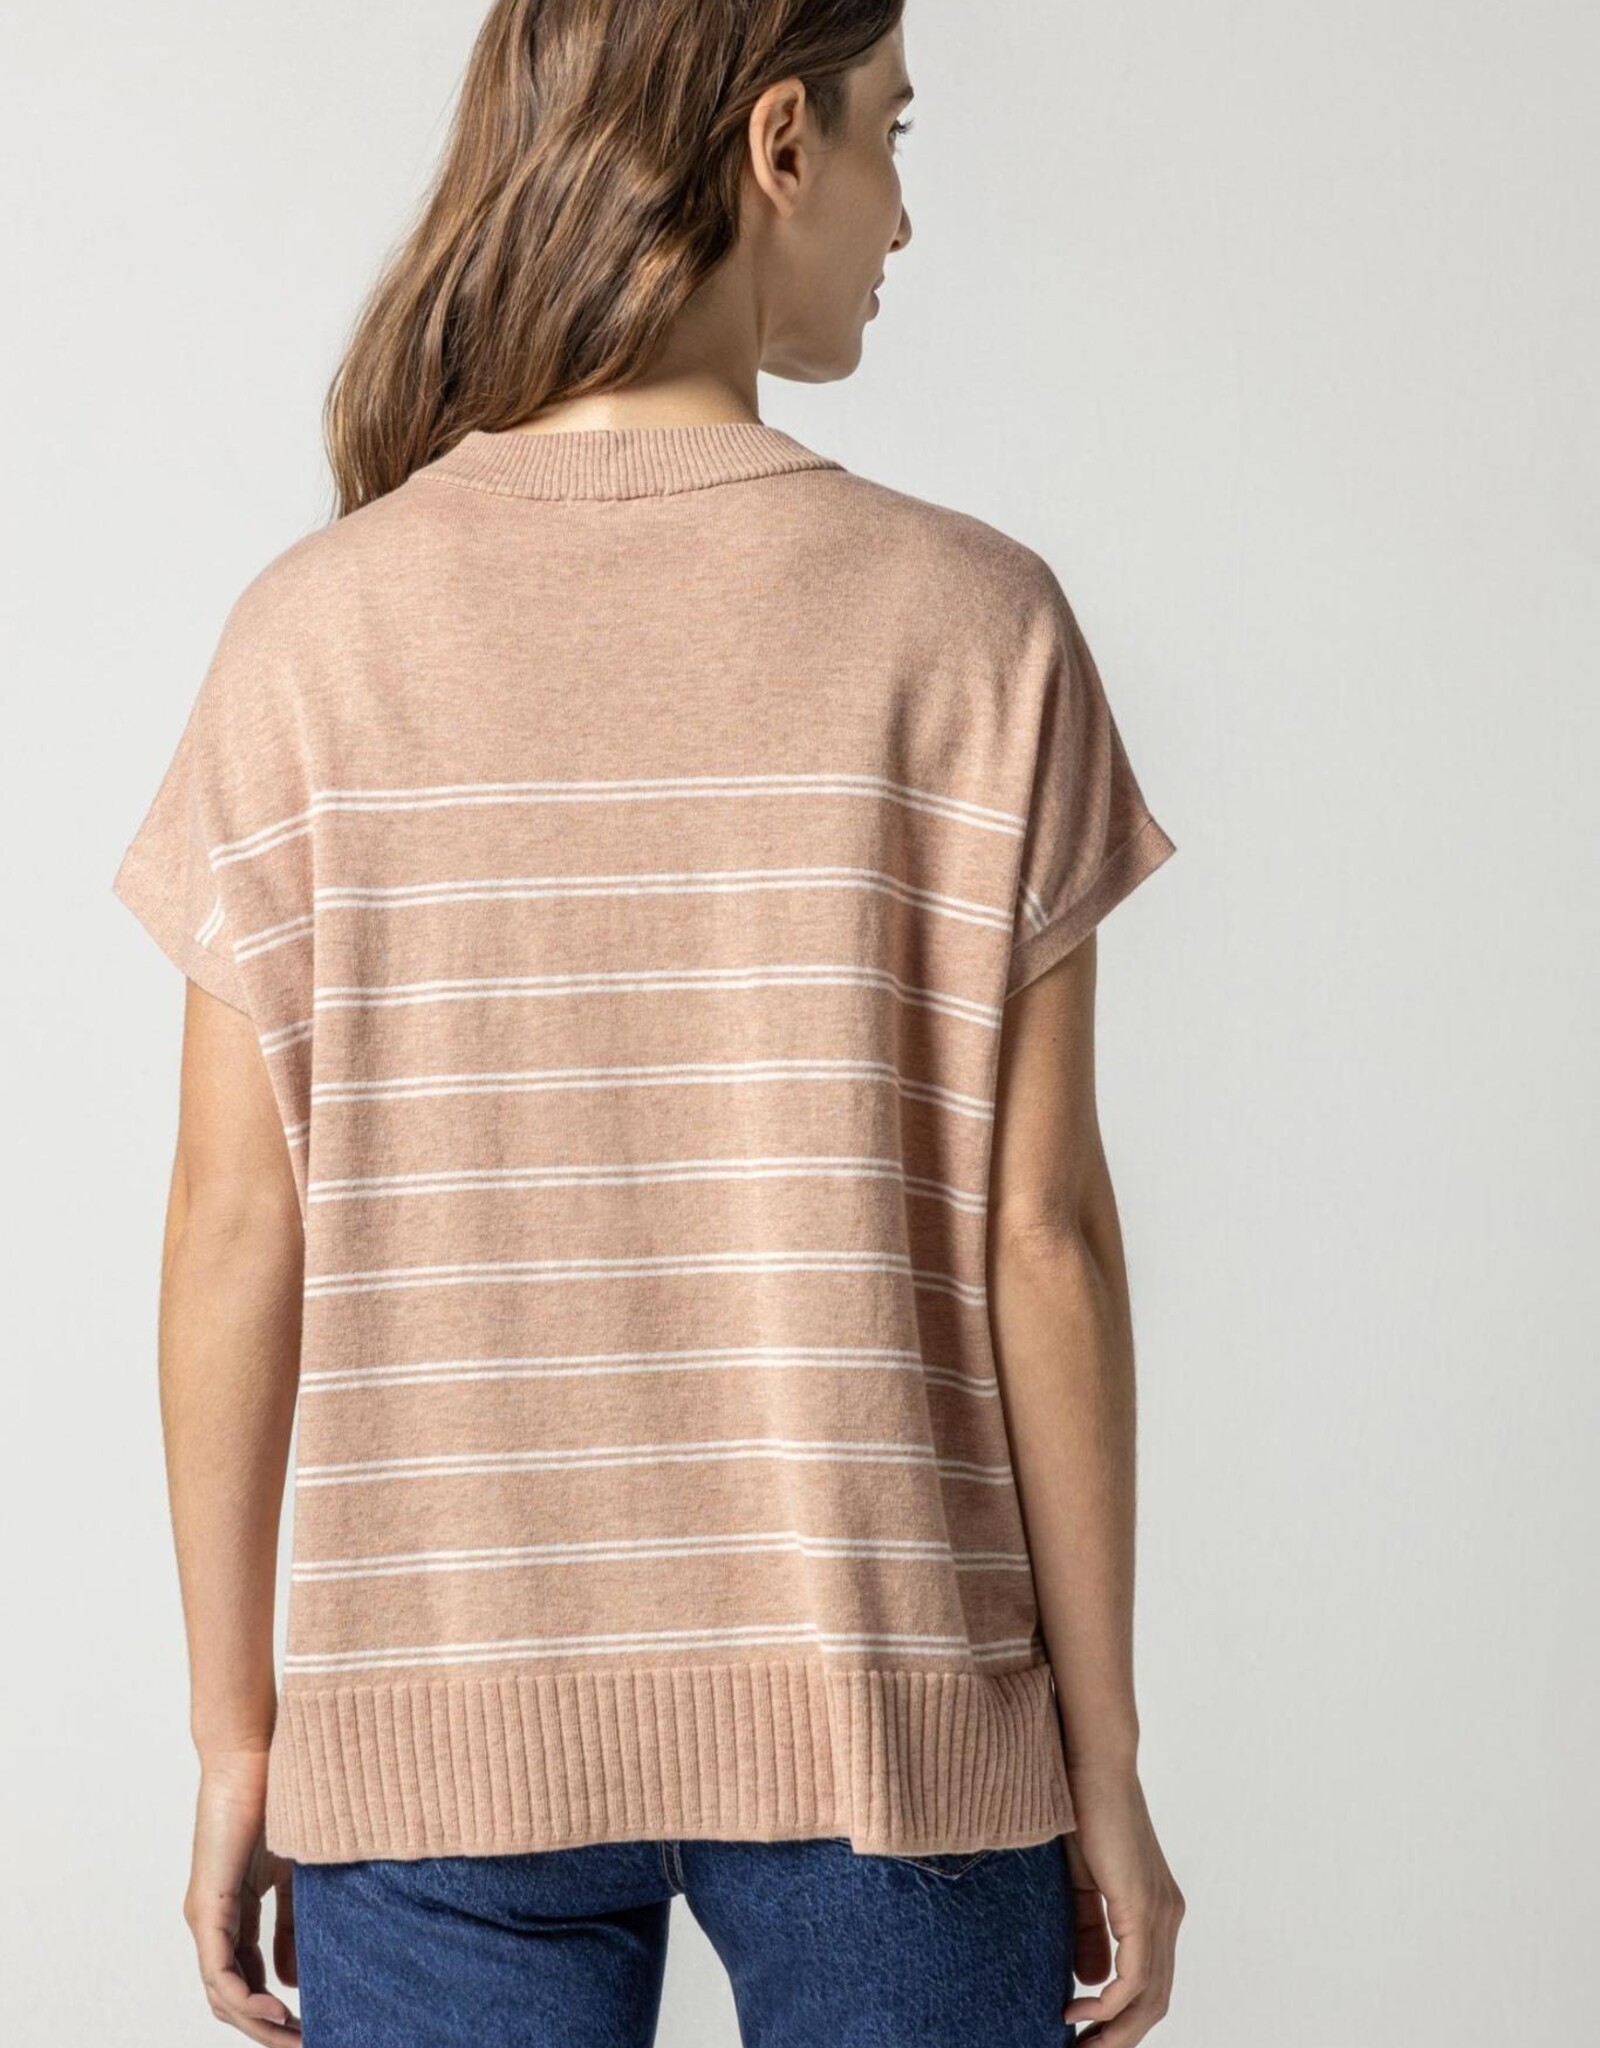 Lilla P Striped Poncho Sweater